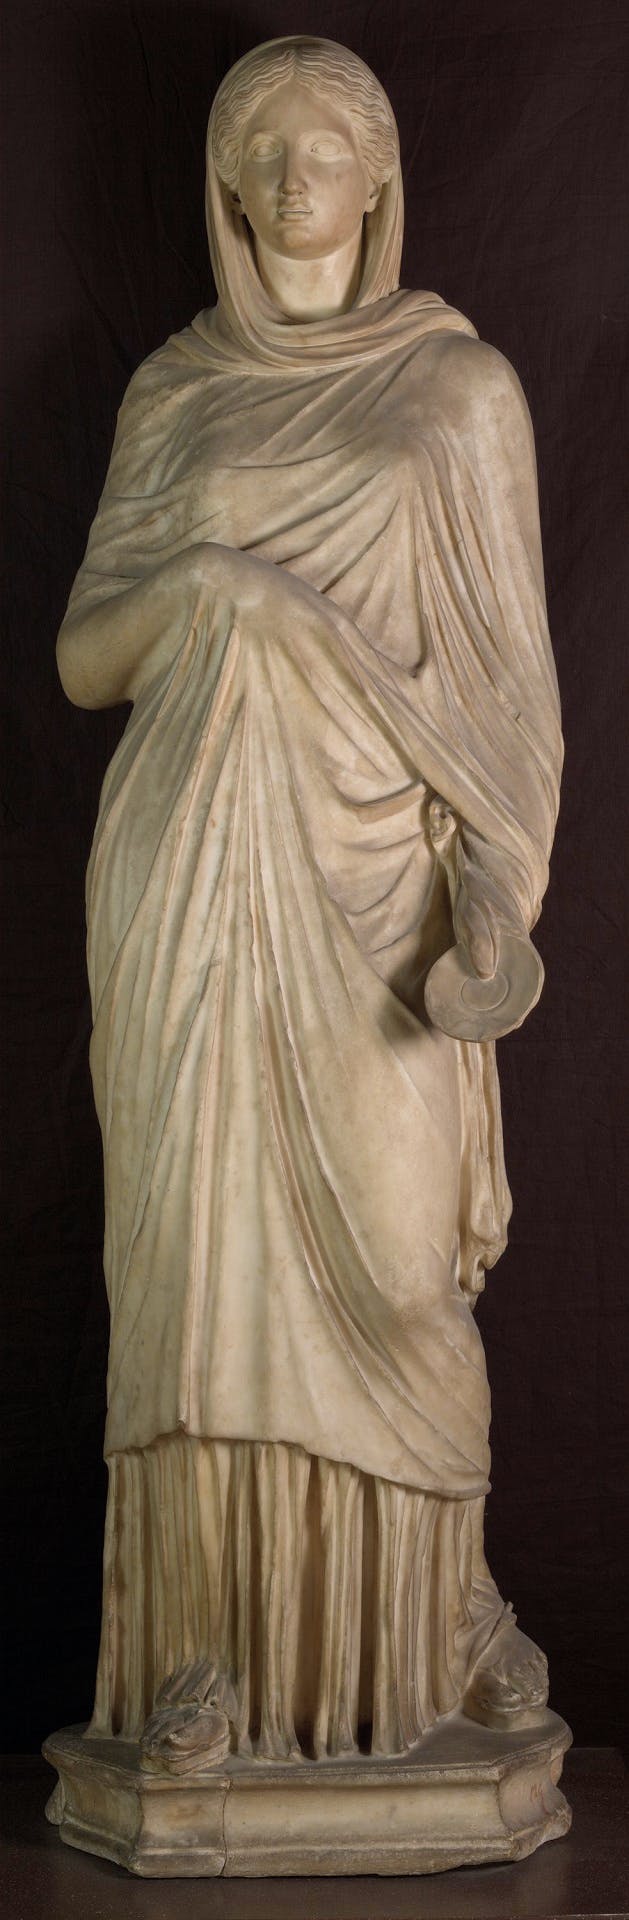 Statua femminile con ritratto ideale